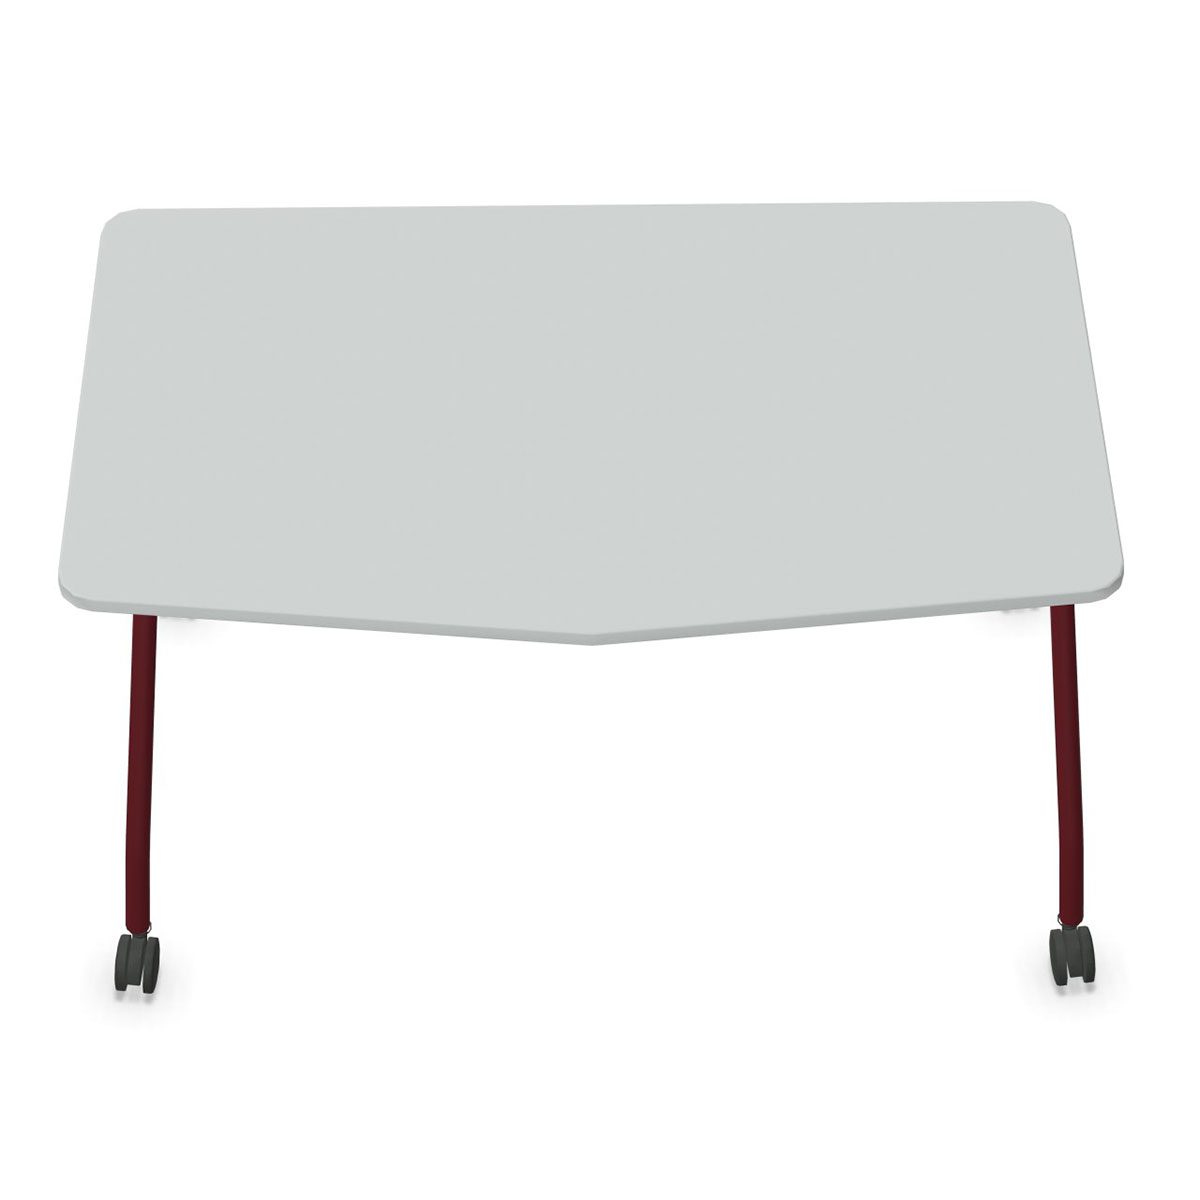 Steelcase VERB Schülertisch auf Rollen in Chevronform, 1.400 x 700 mm